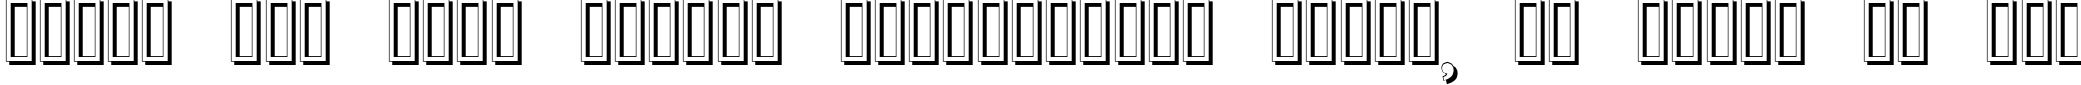 Пример написания шрифтом Erbar Initialen Shadow текста на русском